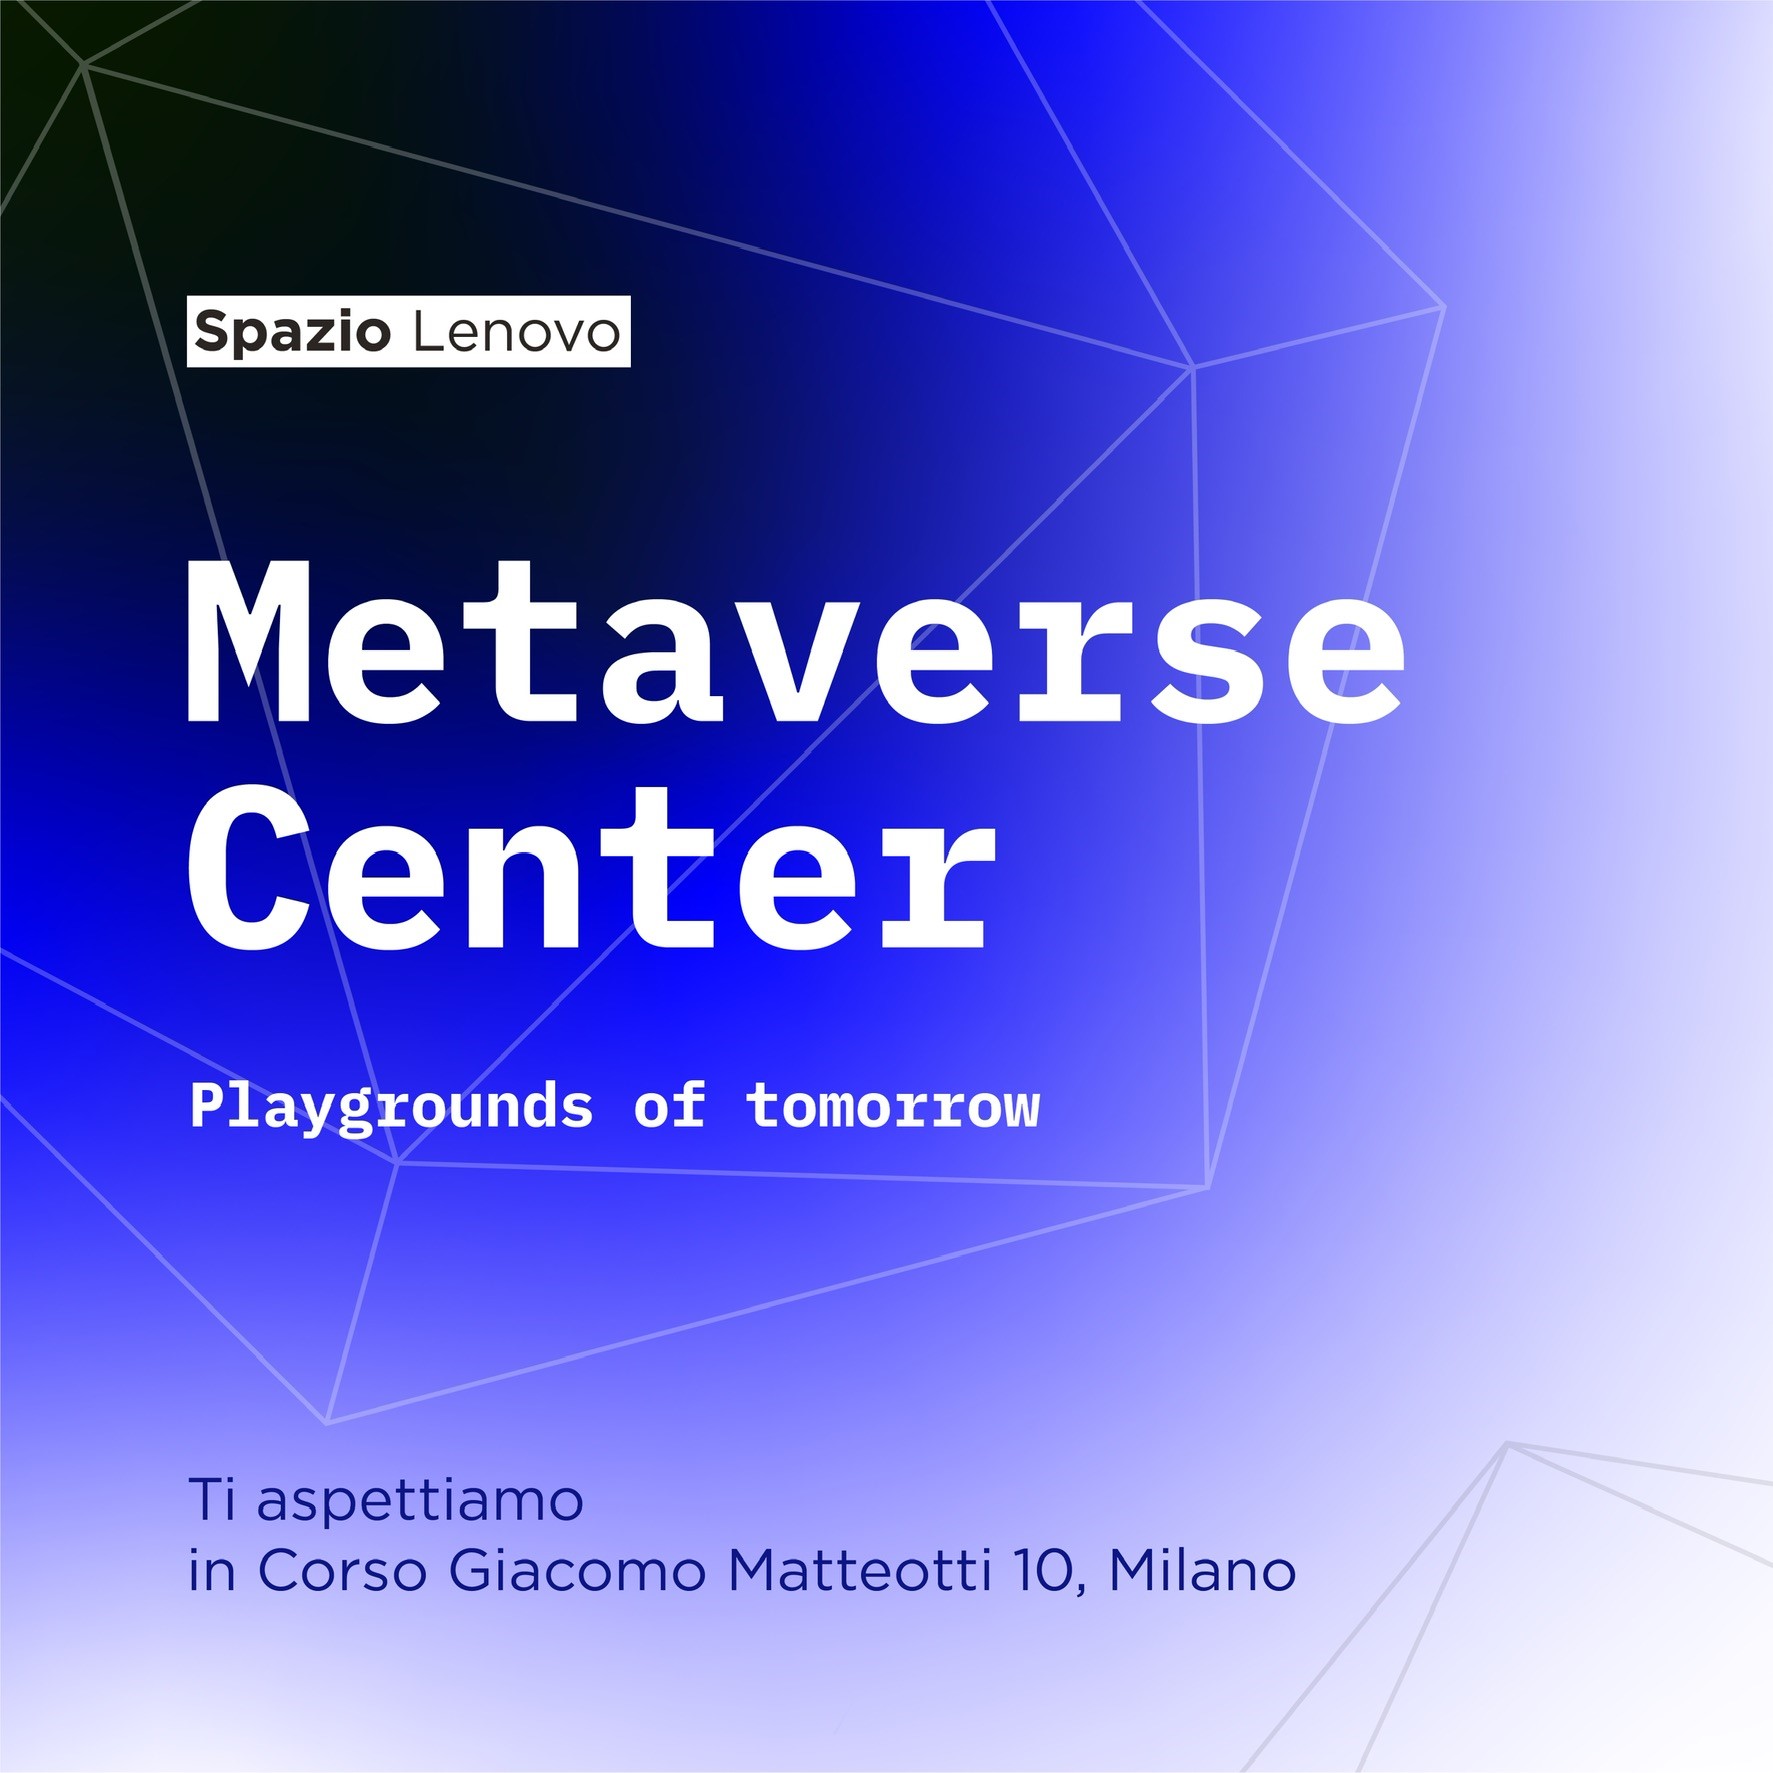 Vieni a scoprire il Metaverse Center di Spazio Lenovo